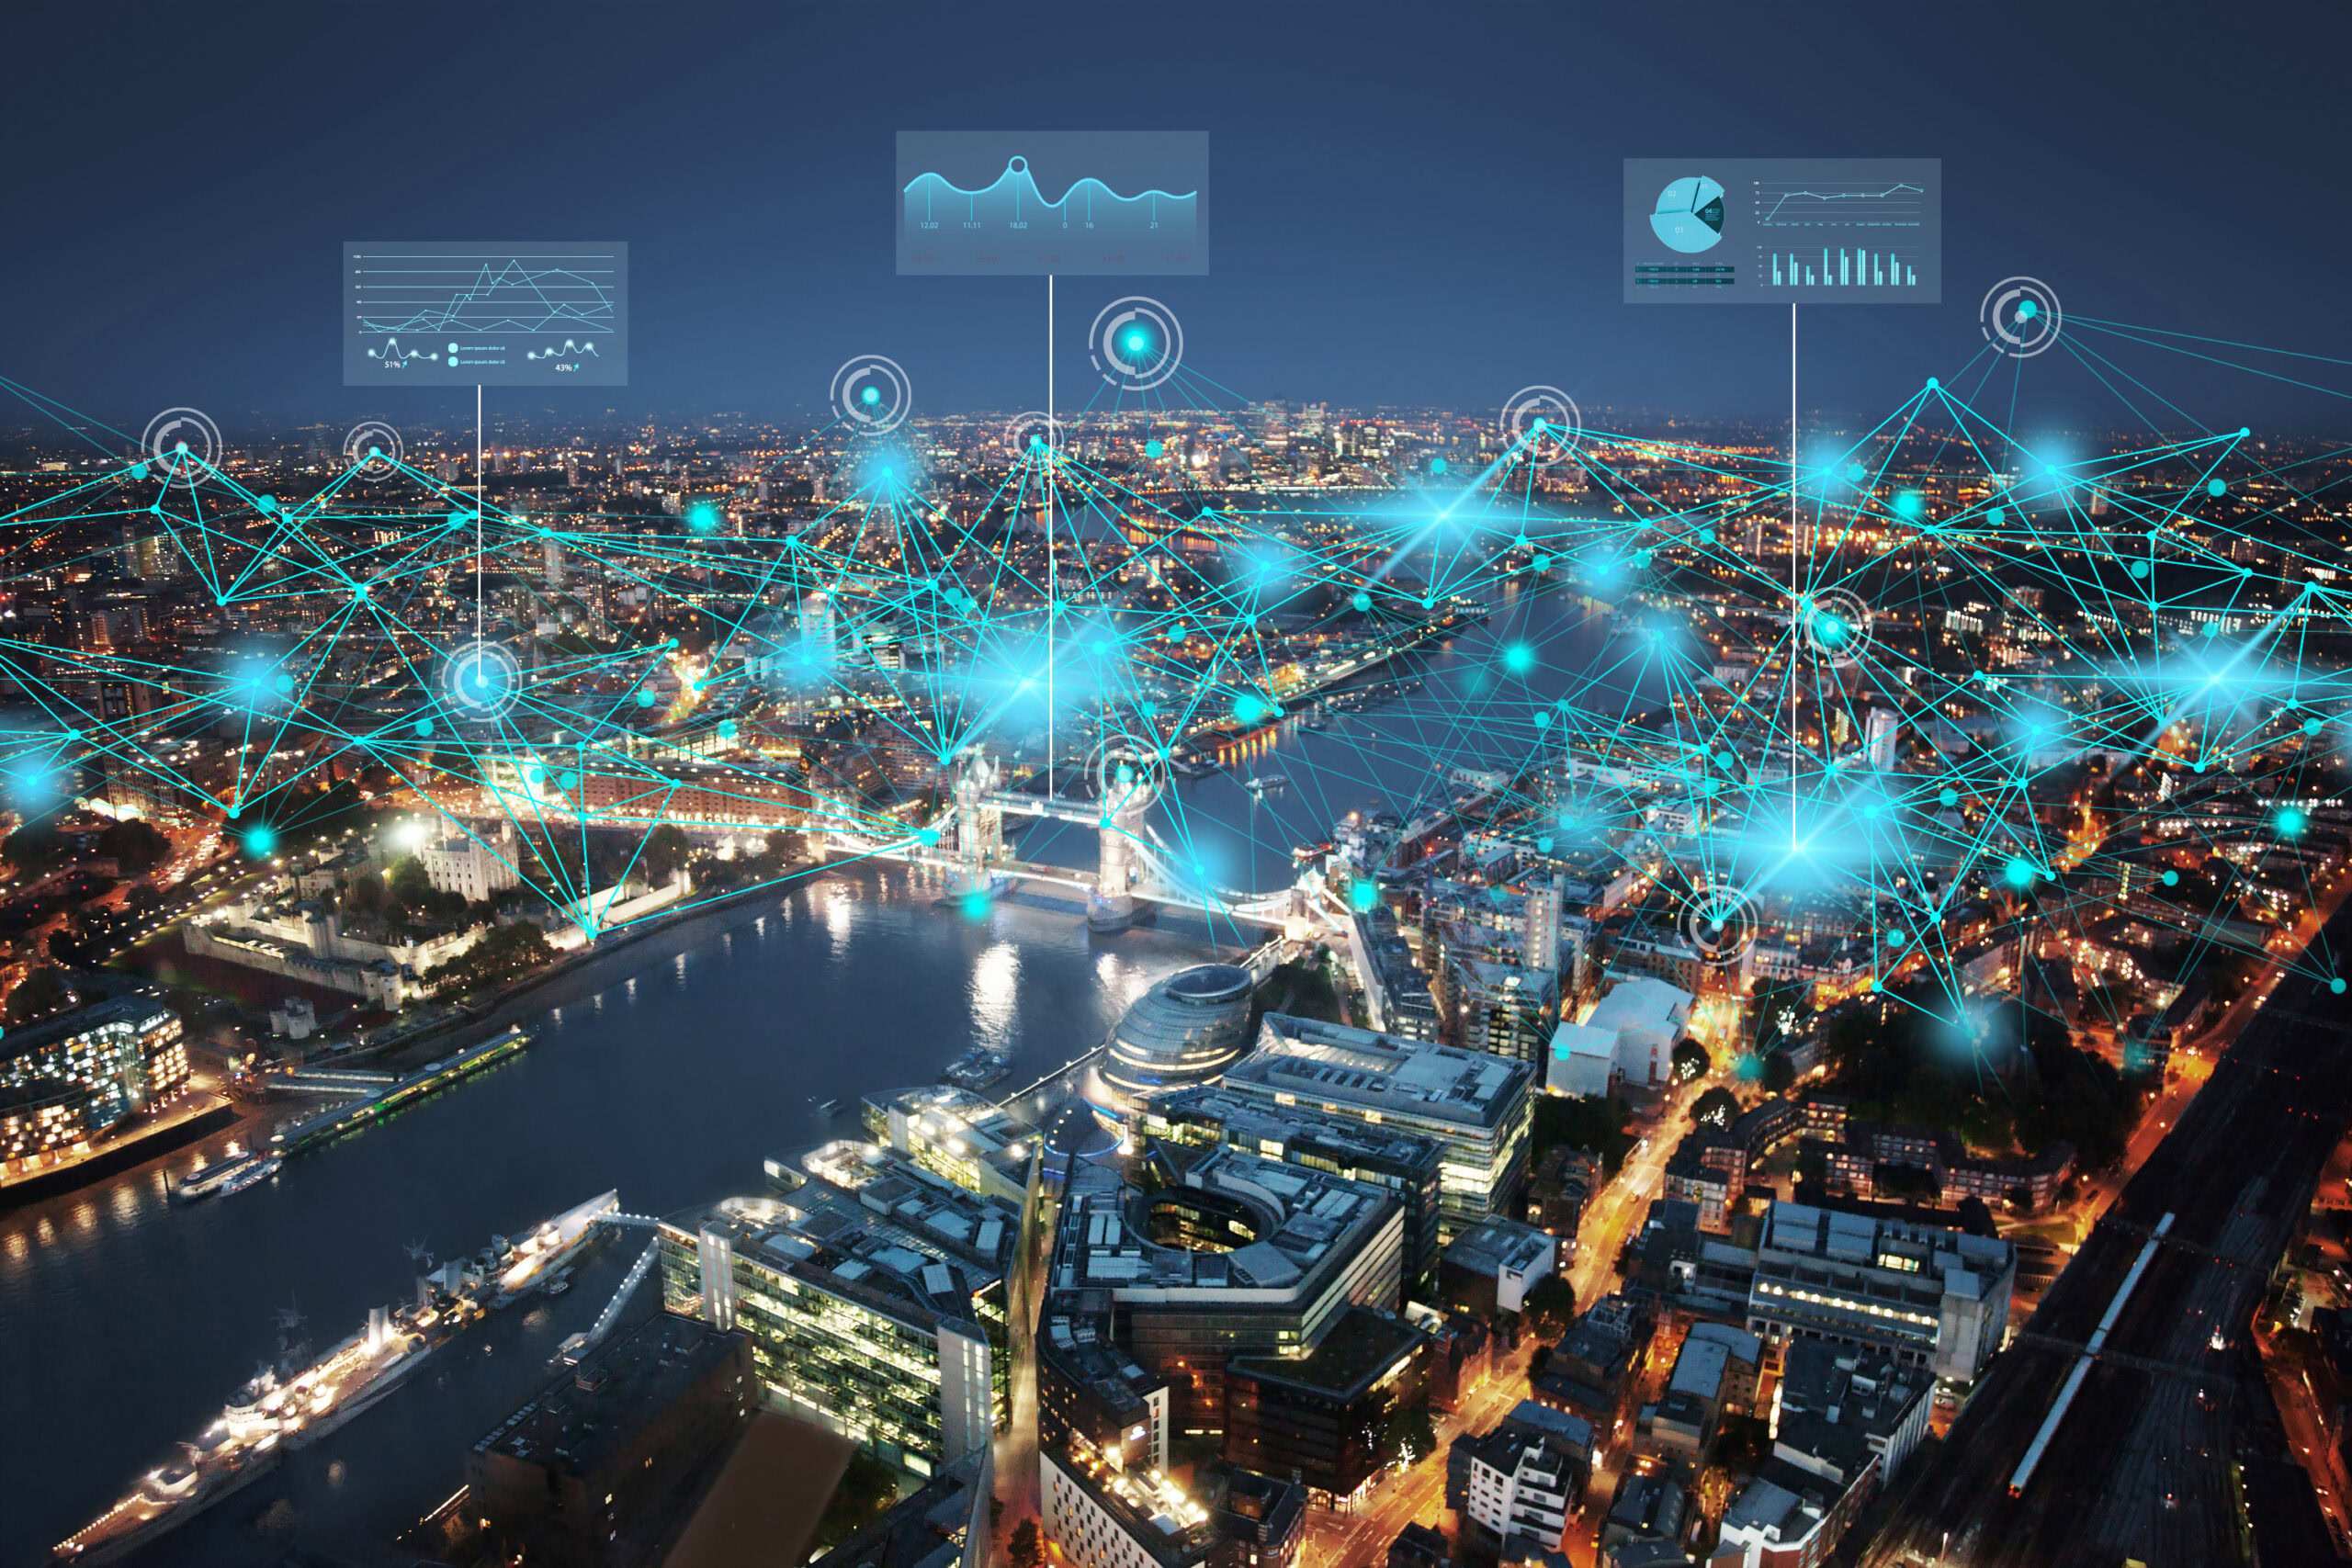 Vue aérienne de la ville de Londres pendant la nuit, connectée numériquement par des lignes et des visuels de données superposés à la scène pour symboliser la connectivité réseau et l'échange de données.